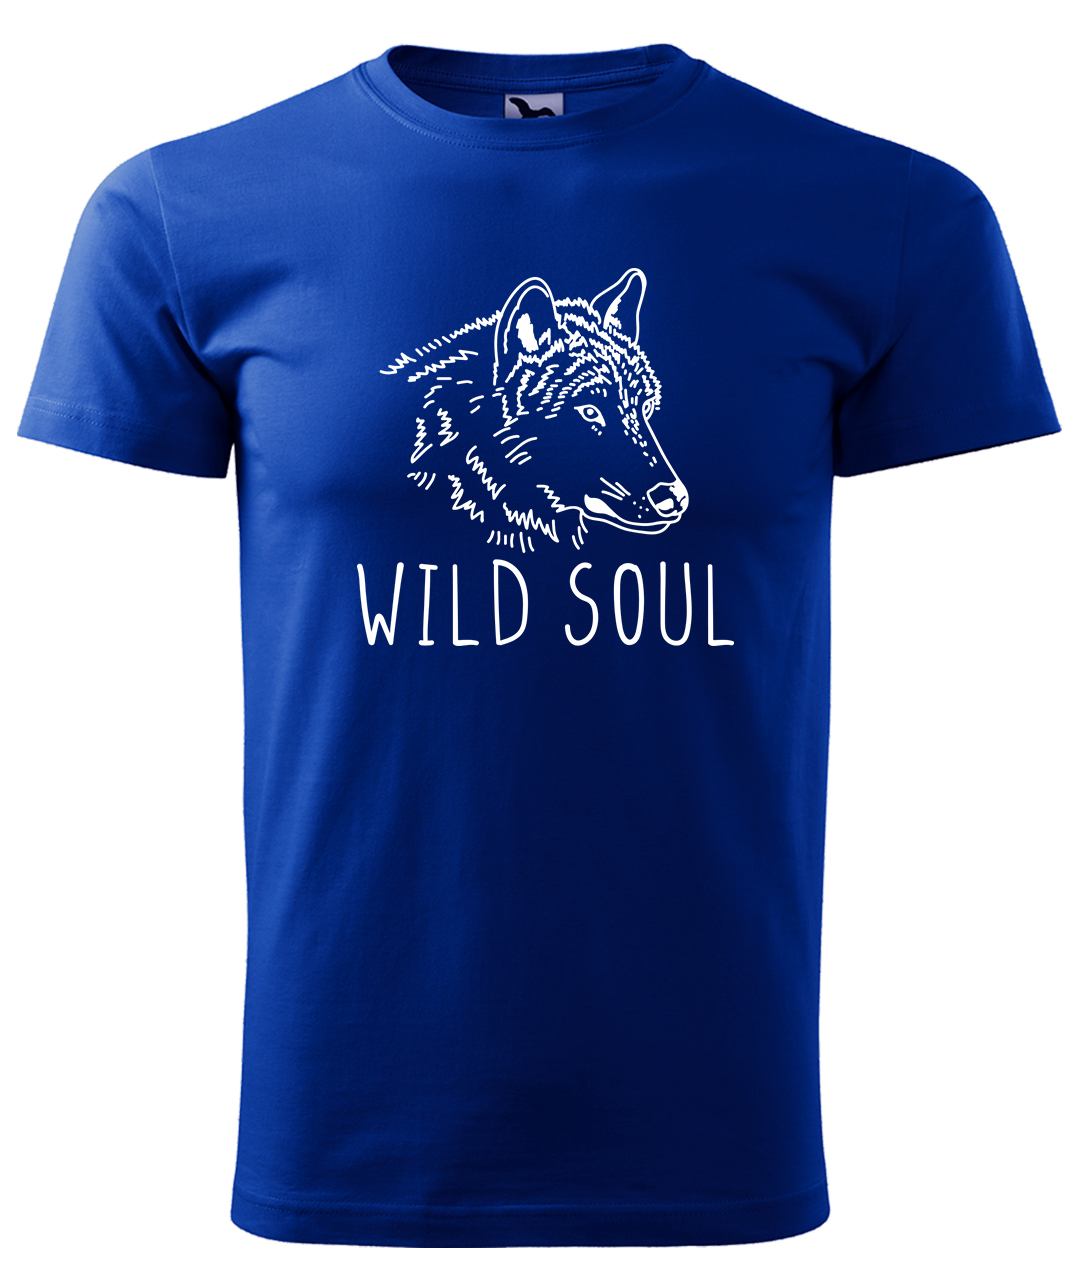 Dětské tričko s vlkem - Wild soul Velikost: 4 roky / 110 cm, Barva: Královská modrá (05), Délka rukávu: Krátký rukáv